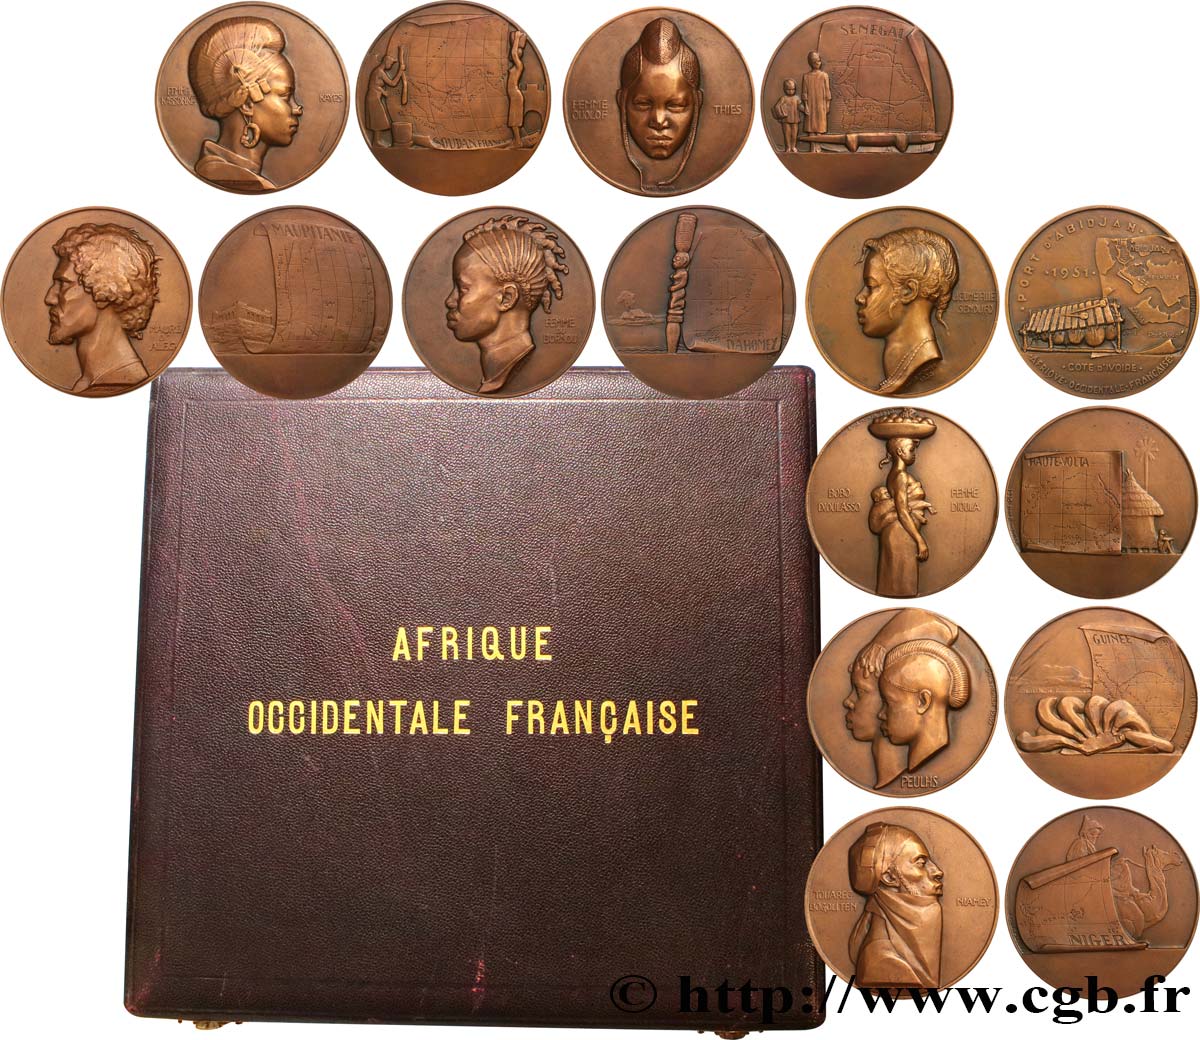 FRENCH WEST AFRICA Coffret de 8 médailles, Afrique Occidentale Française, les populations d’Afrique de l’Ouest AU